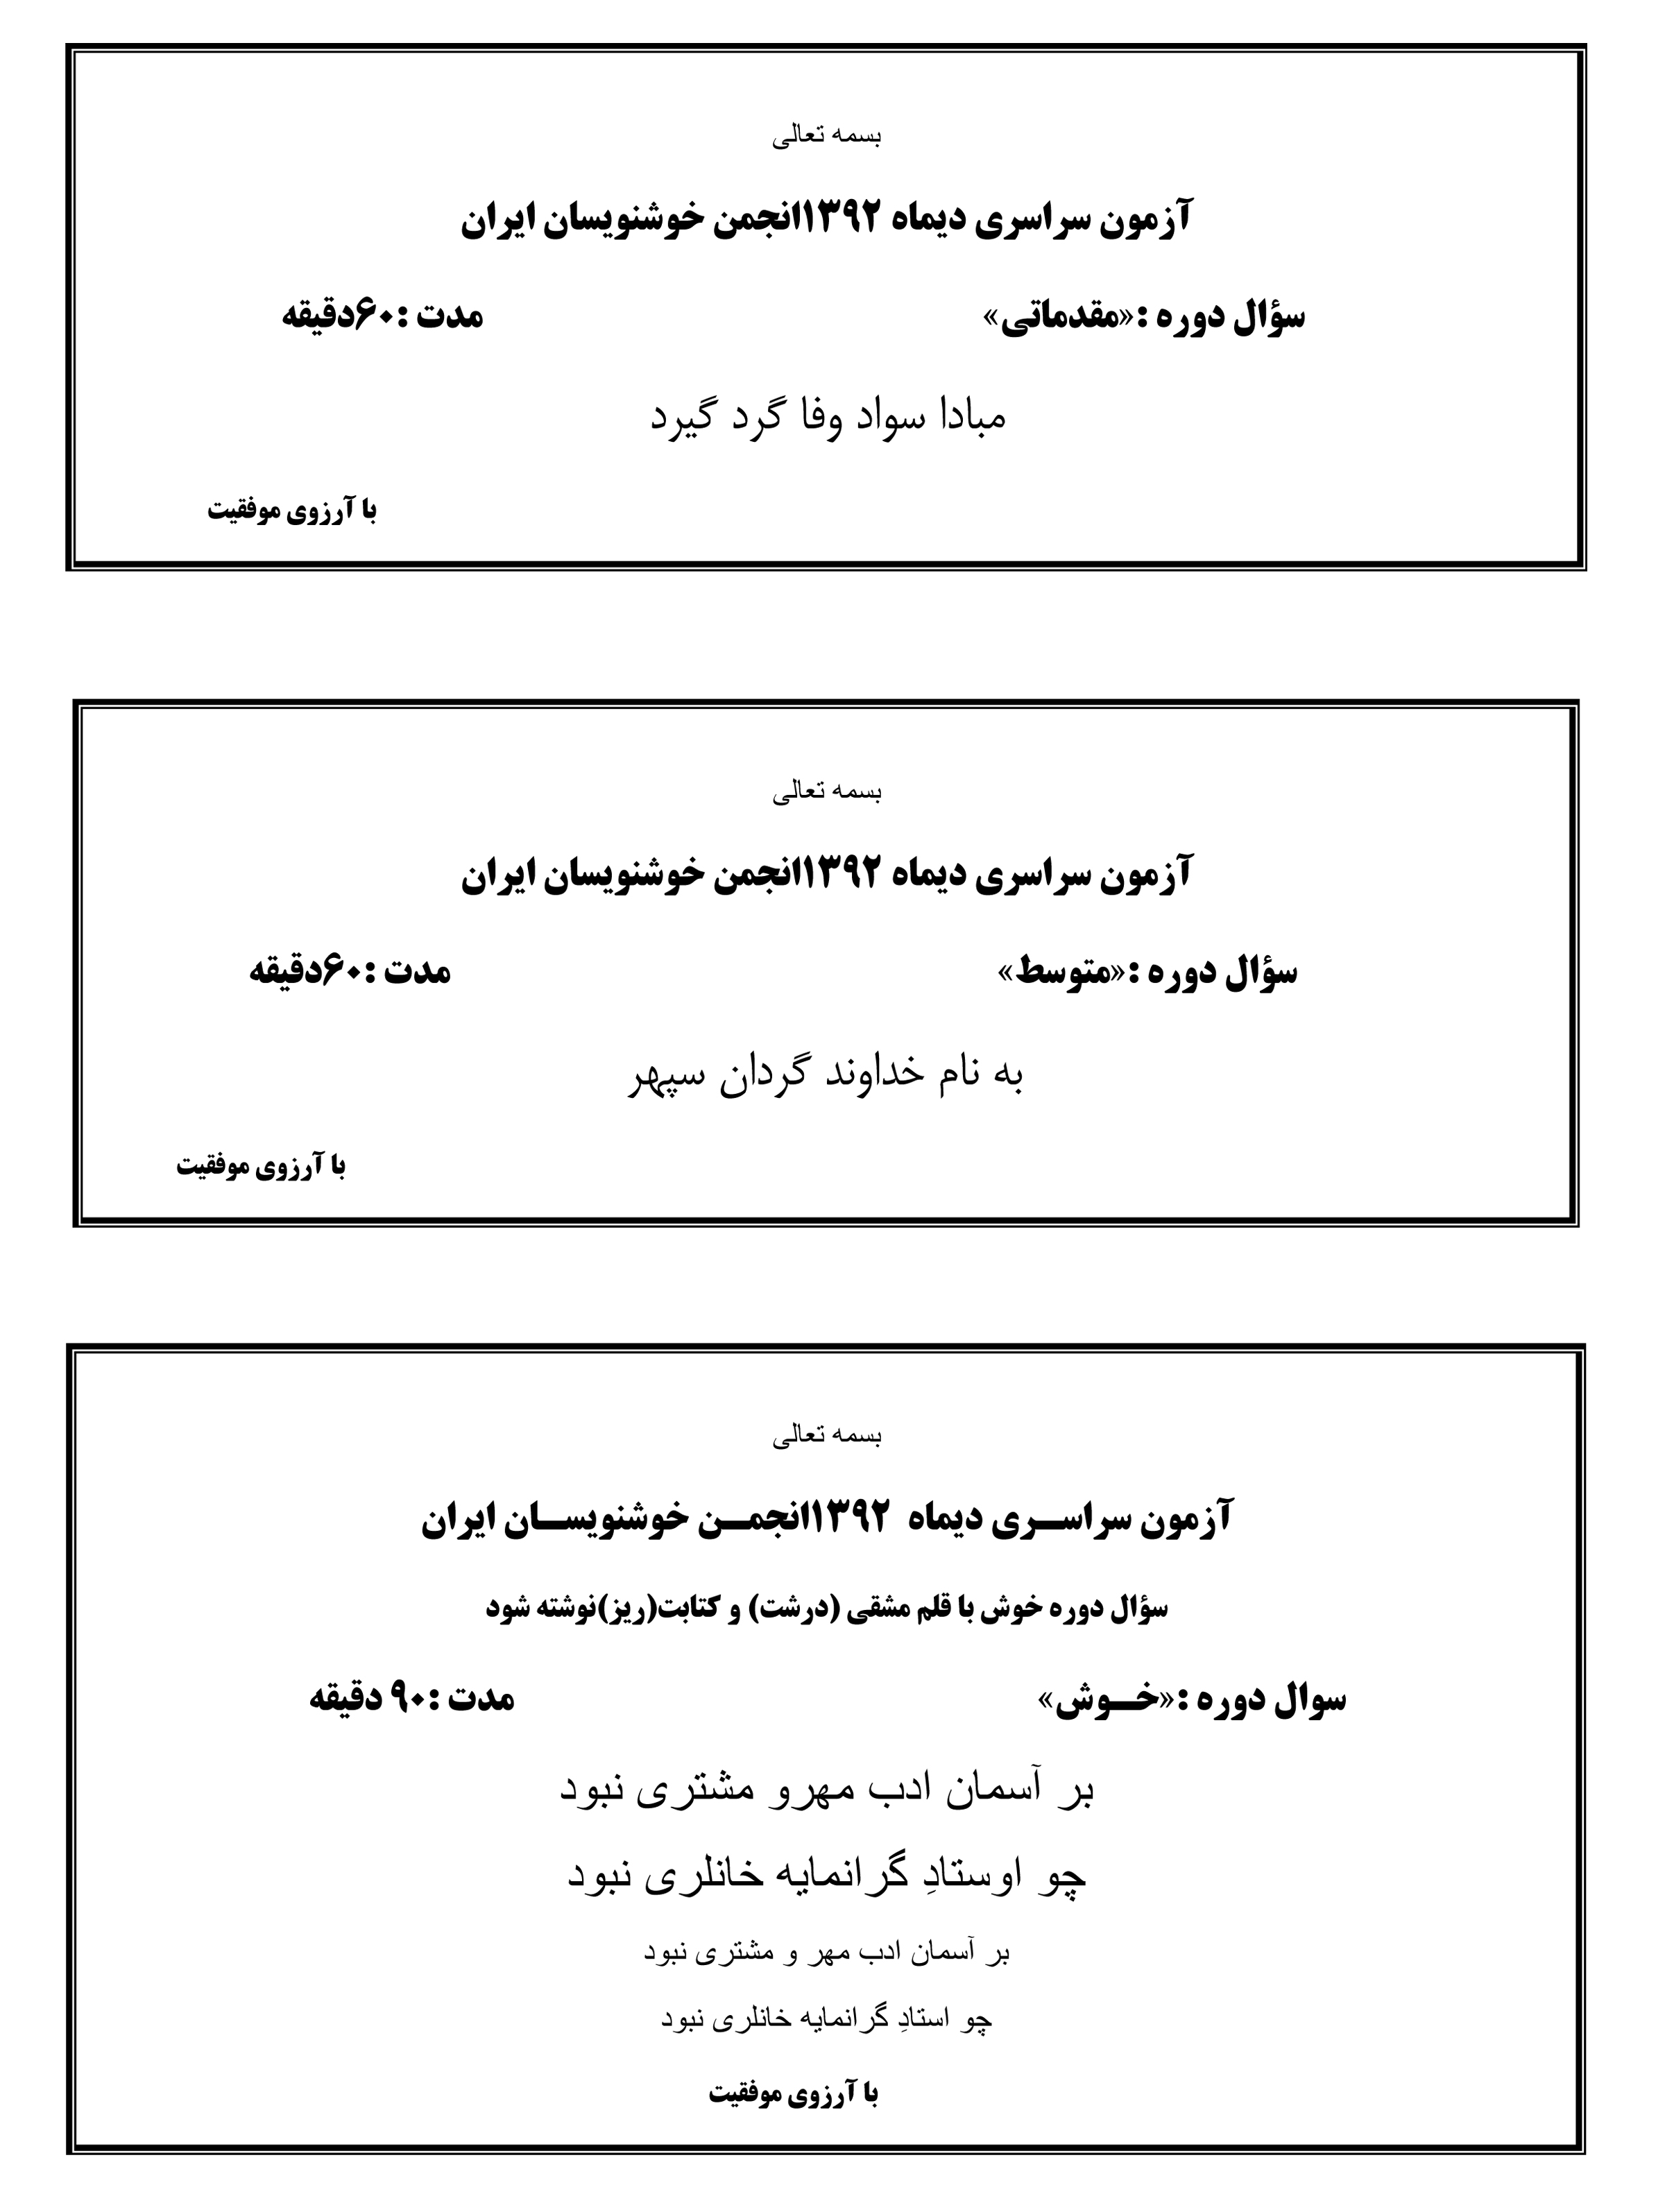 سوالات دی ماه 1392 انجمن خوشنویسان ایران 